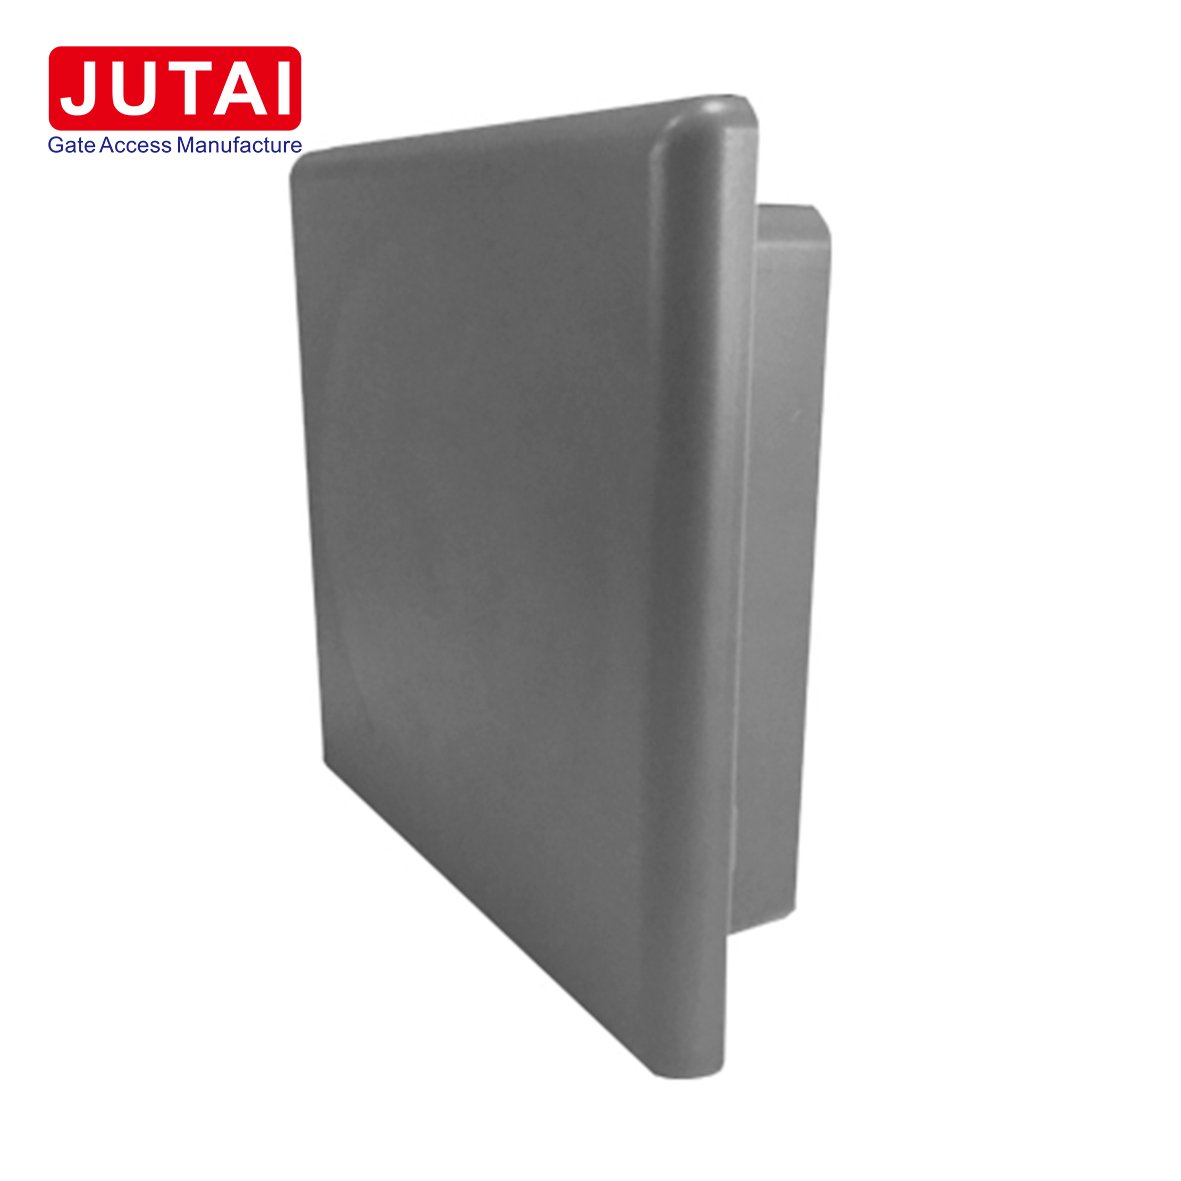 JTTR-5 Activator Card Reader Entry Long Range Reader 1-8m Distance